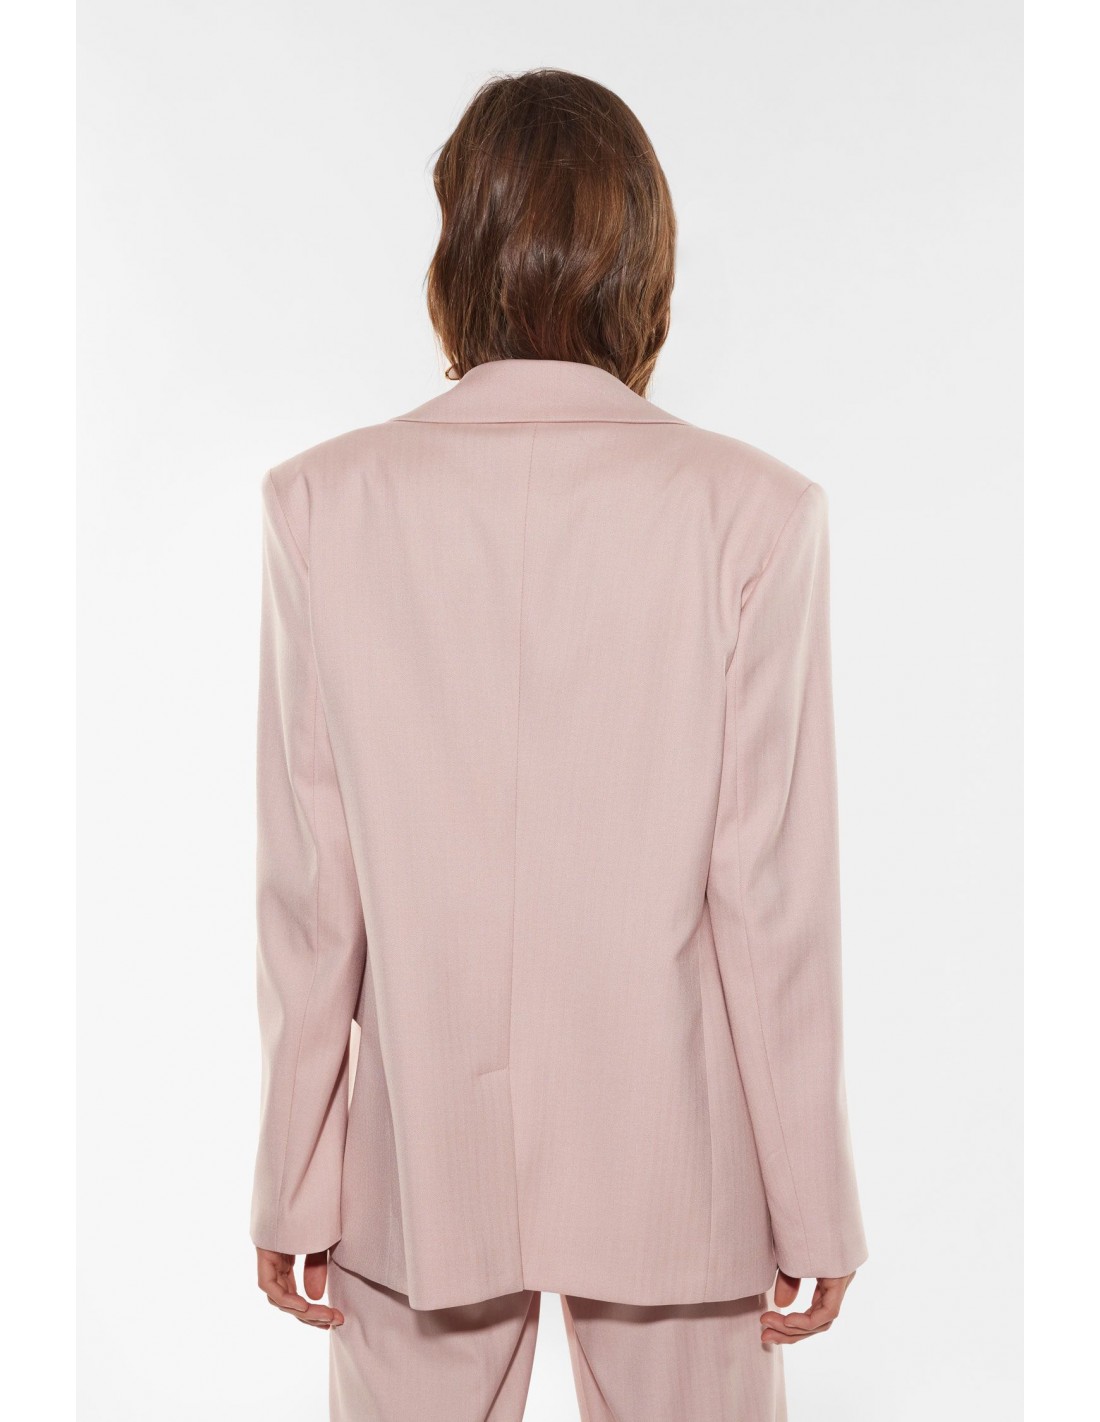 https://www.imperial-lyon.fr/31467-thickbox_default/imperial-femme-blazer-de-tailleur-a-revers-larges-en-drap-chevrons-coloris-rosa-rose-poudre.jpg